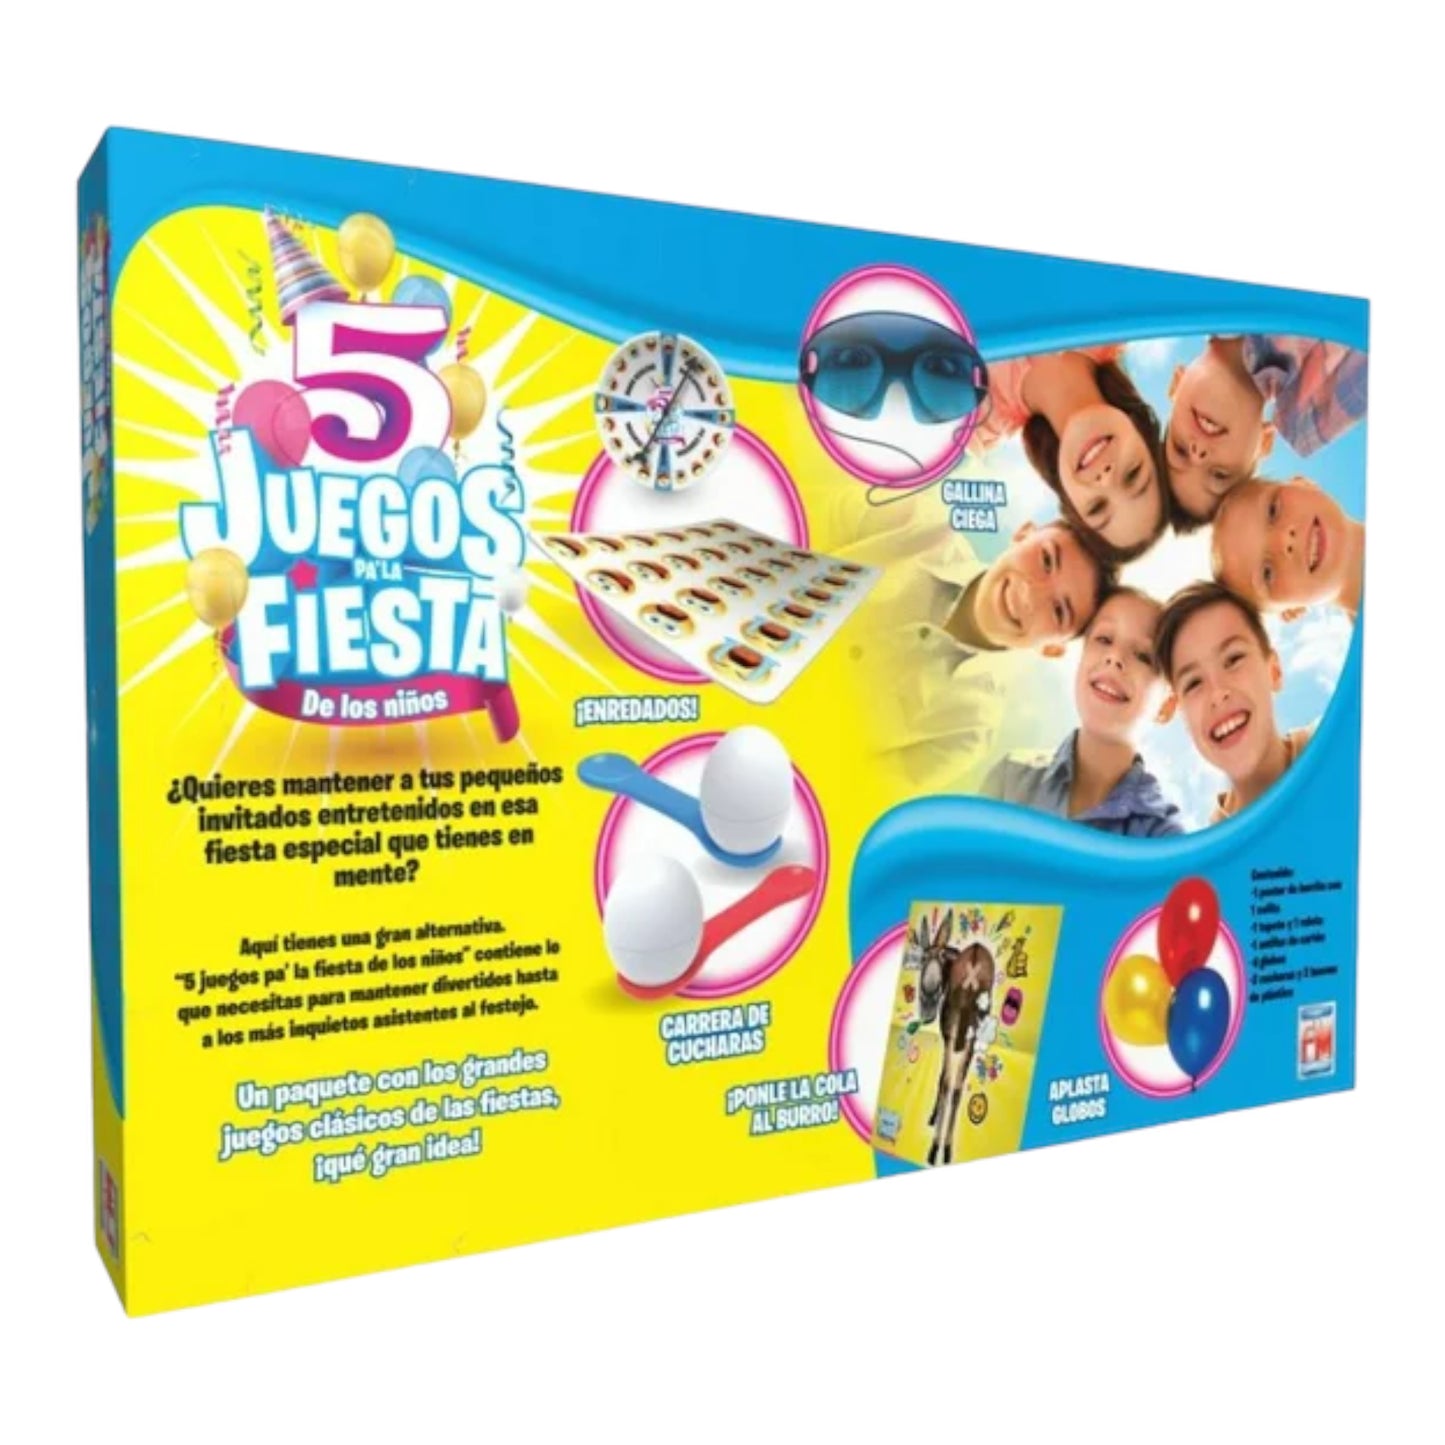 5 Juegos Pa’La Fiesta De Los Niños Fotorama